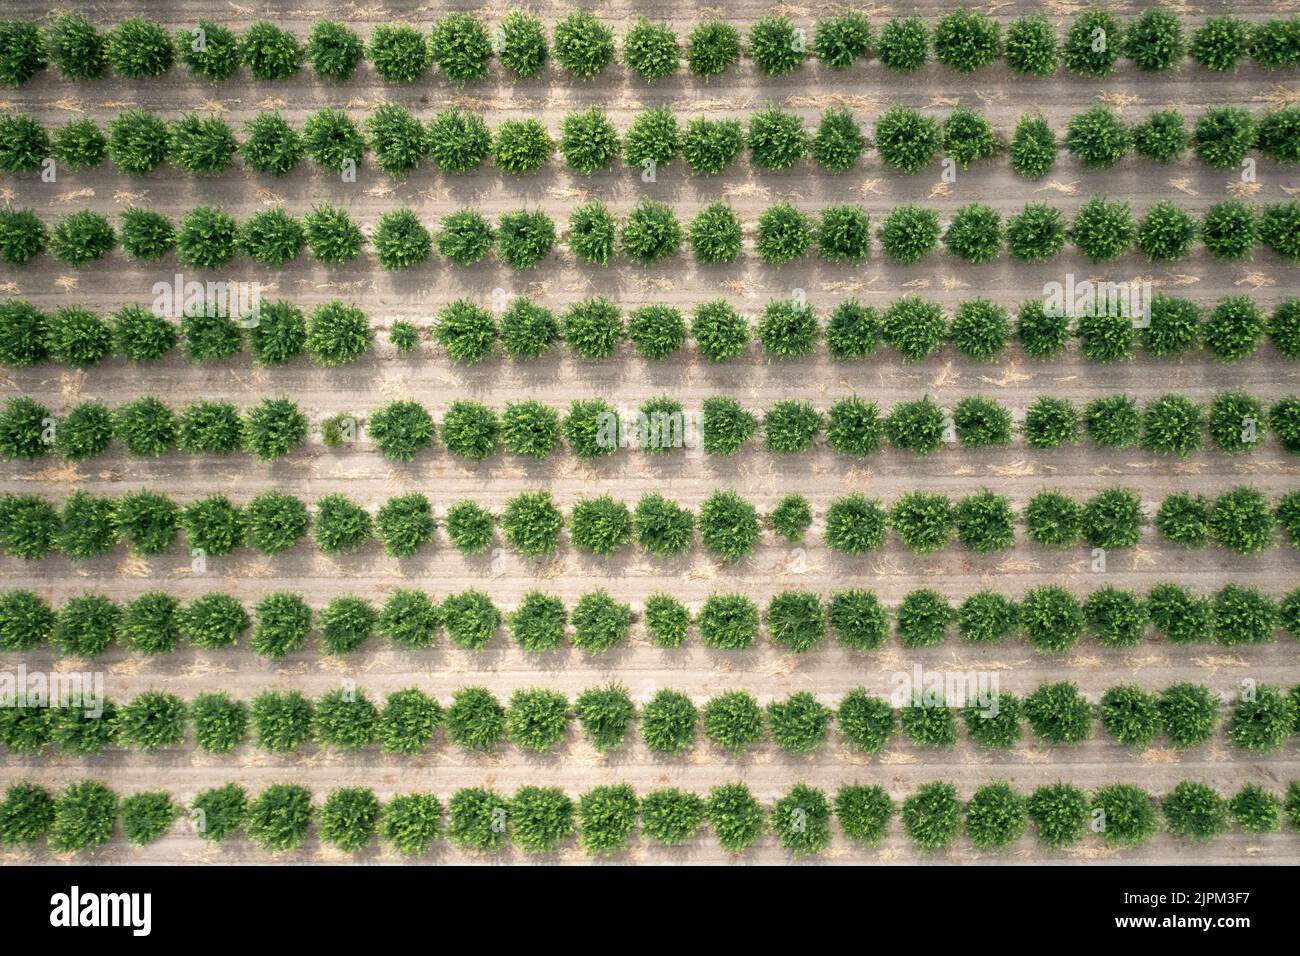 Vista aérea del huerto de cítricos. Vista superior de limoneros cultivando. Fotografía de alta calidad Foto de stock